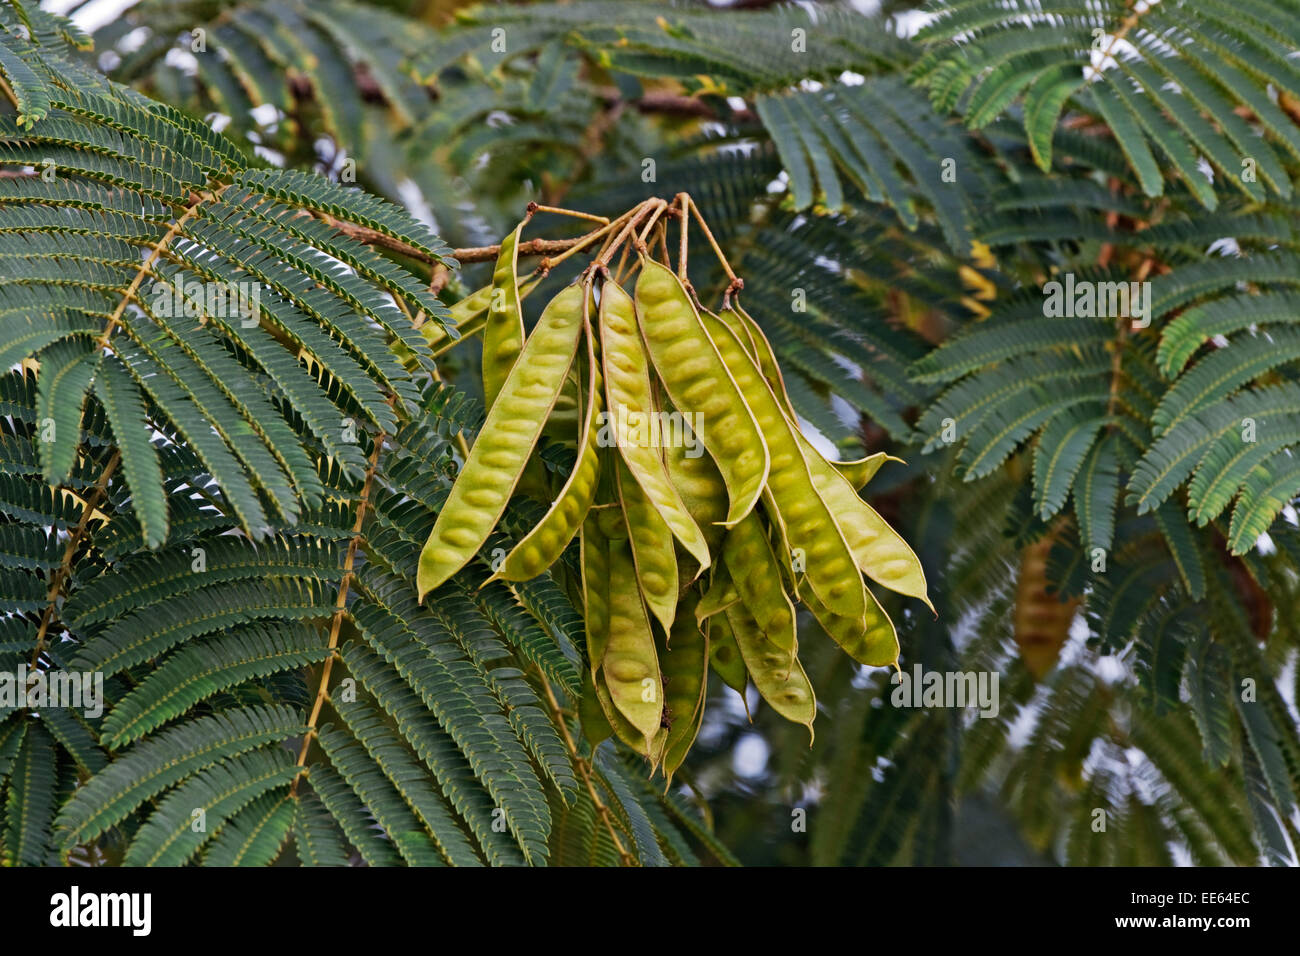 Silktree (Albizia julibrissin) Stock Photo